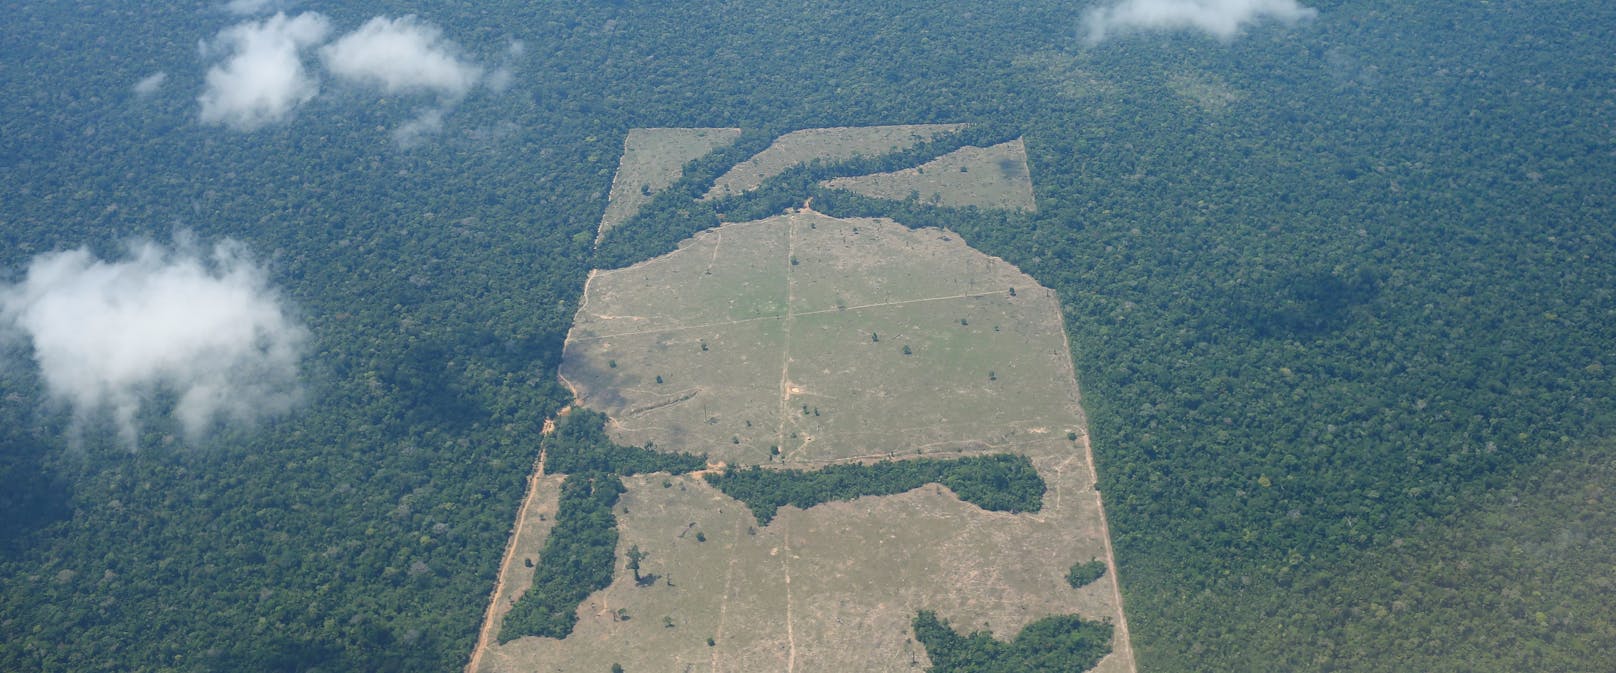 Luftaufnahmen zeigen riesige abgeholzte Flächen des Amazonas-Regenwaldes im Bundesstaat Rondonia in Brasilien.